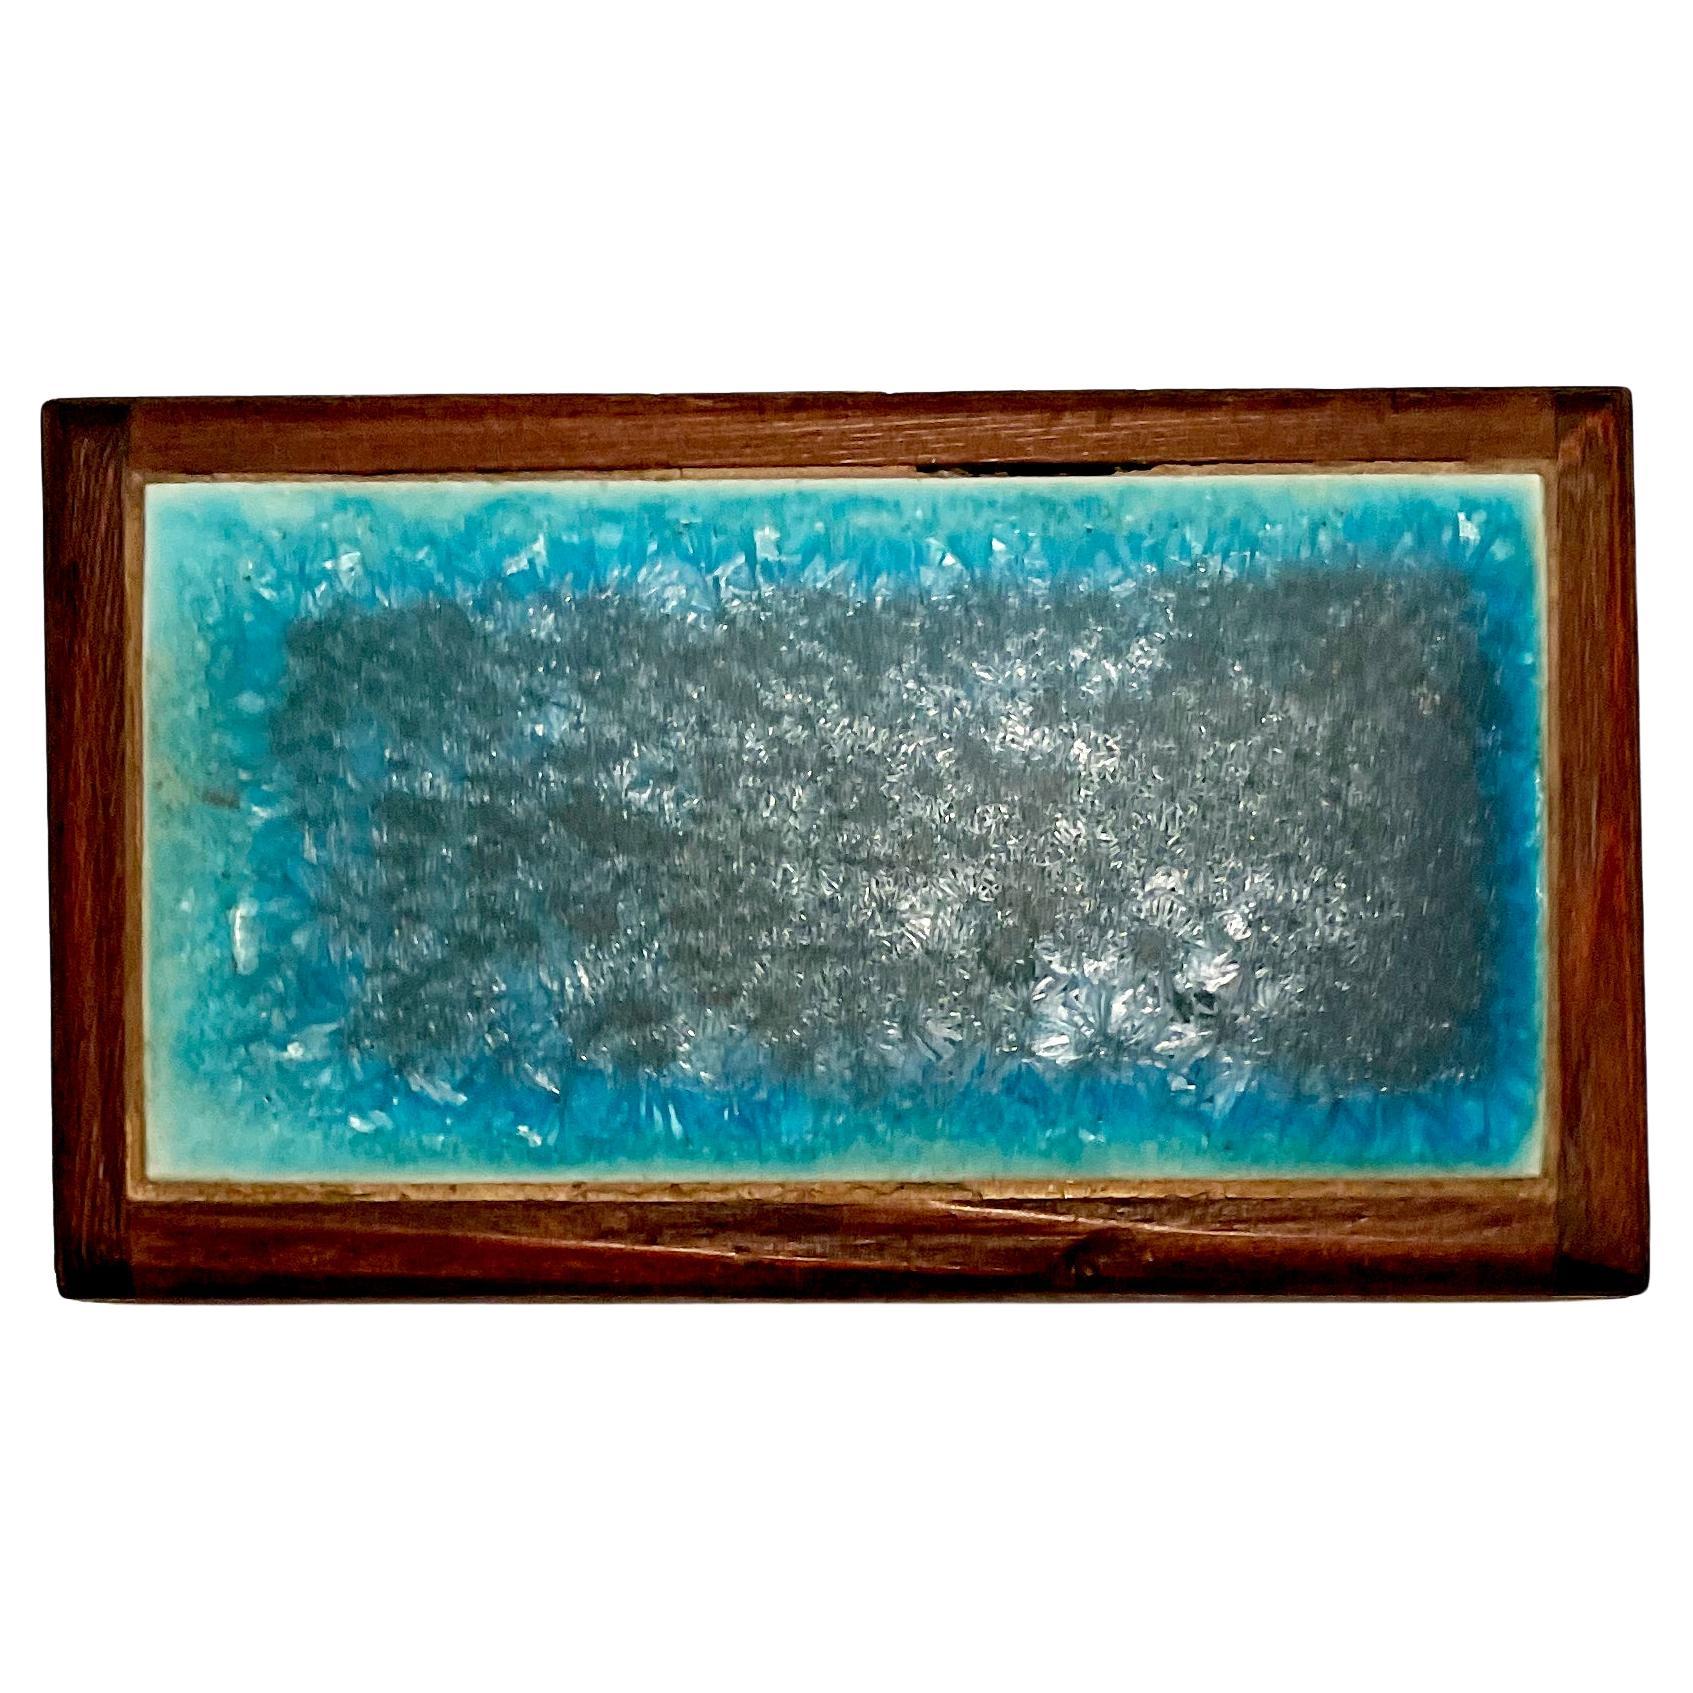 Boîte en bois de rose faite à la main avec des carreaux bleus craquelés créés par Doyle Lane. La boîte mesure 2